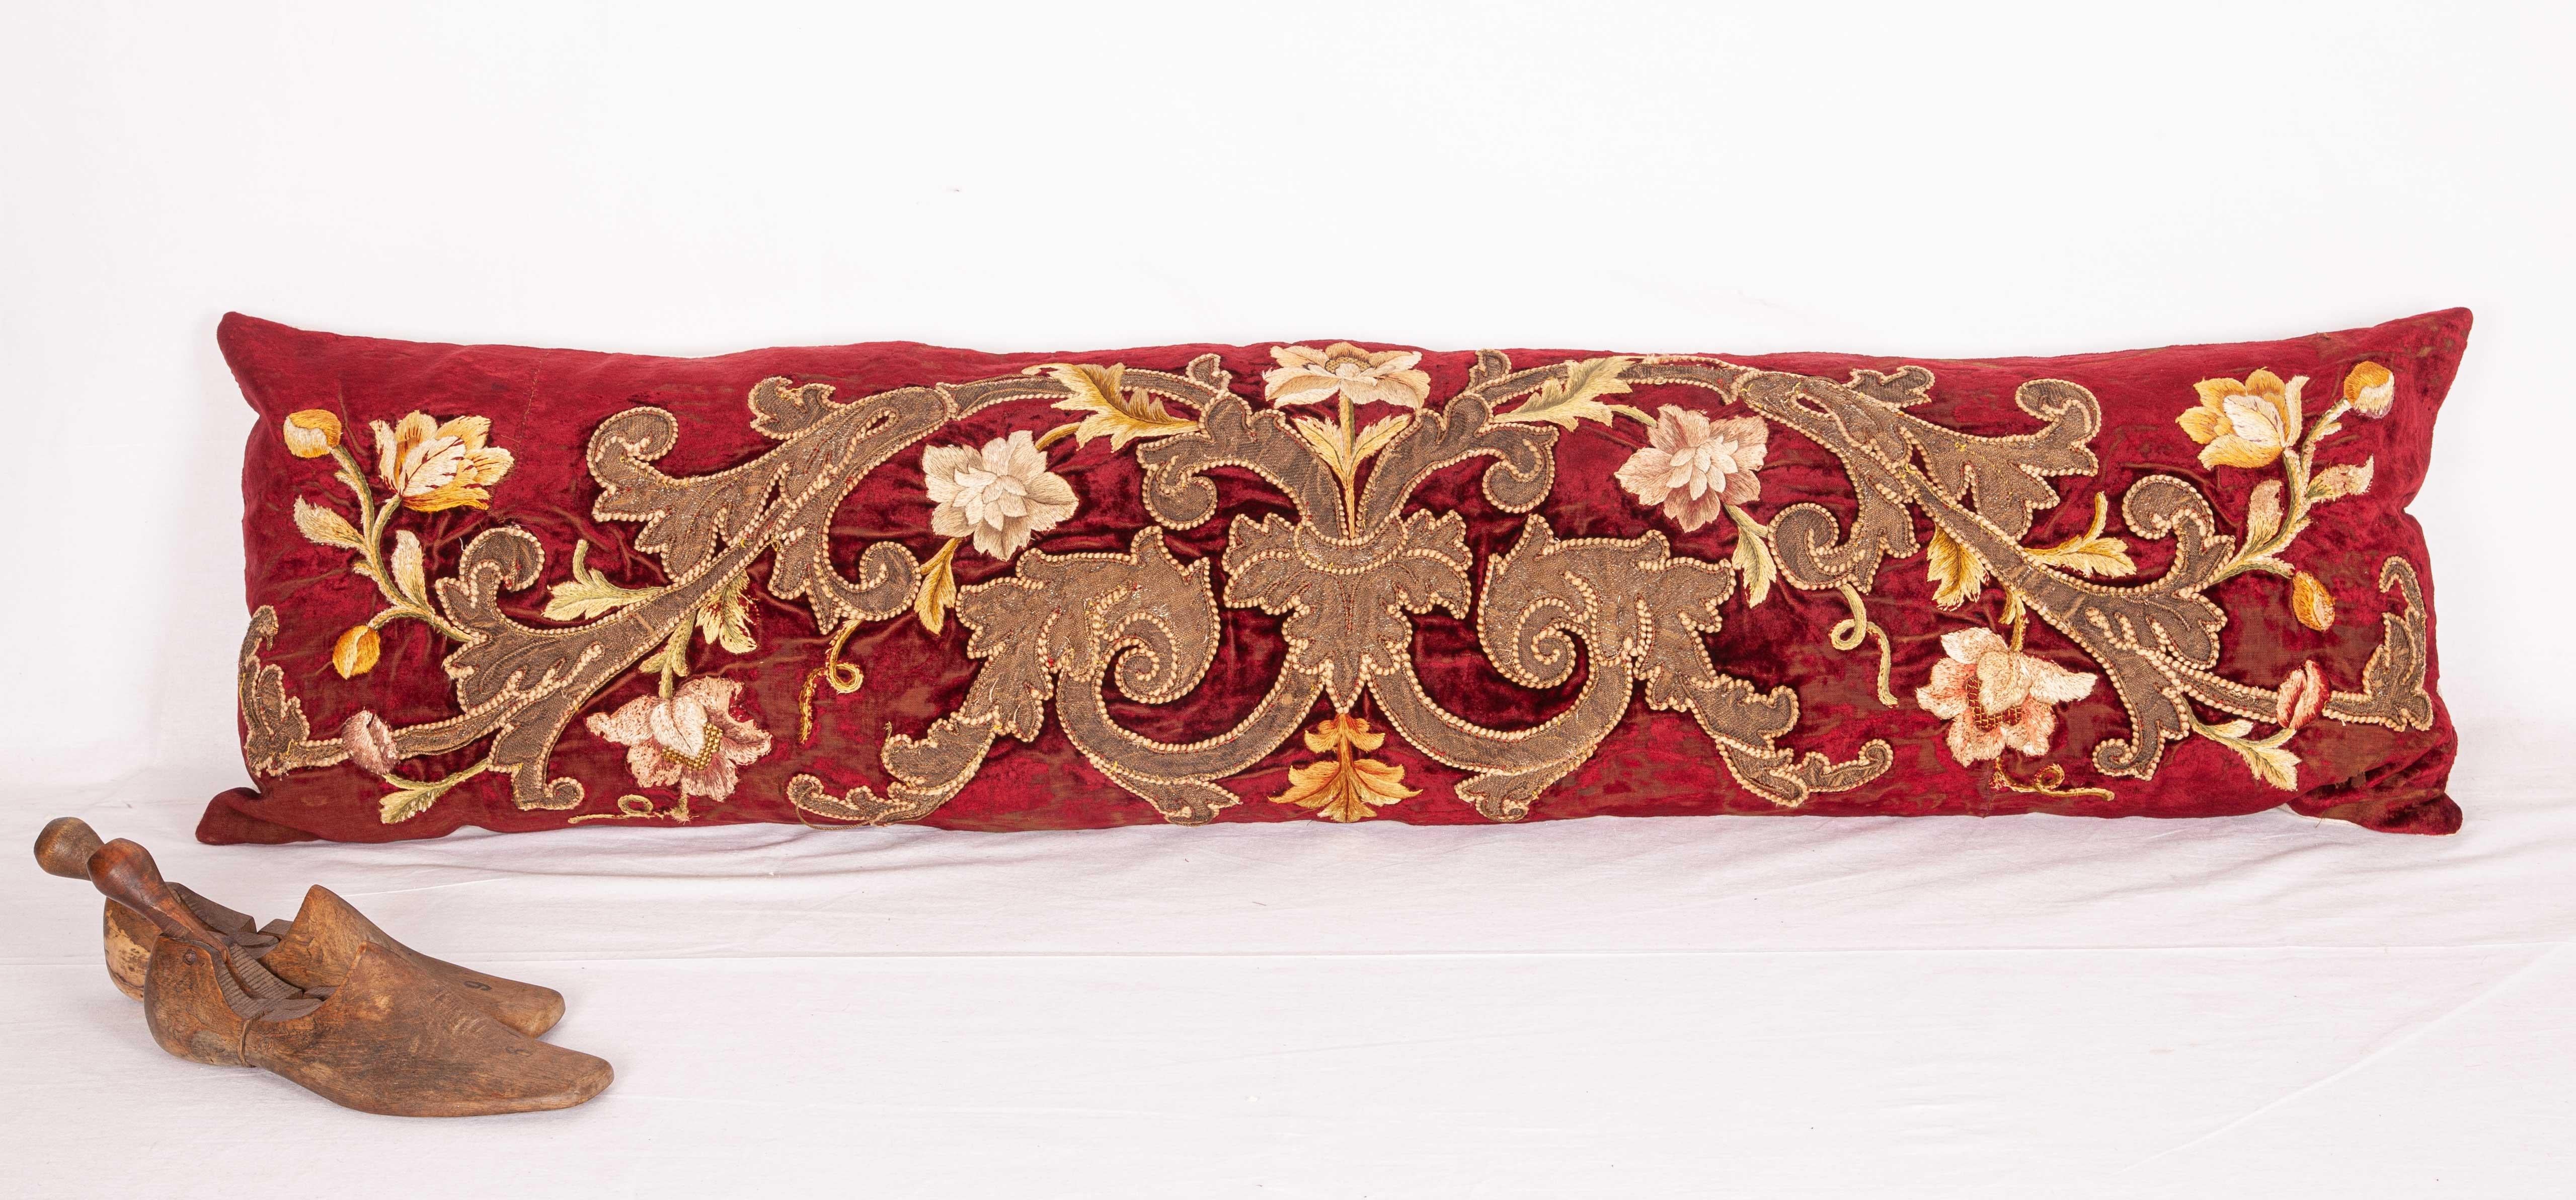 Appliqué Antique Lumbar Pillow Case Made from an 18th Century European Applique Panel